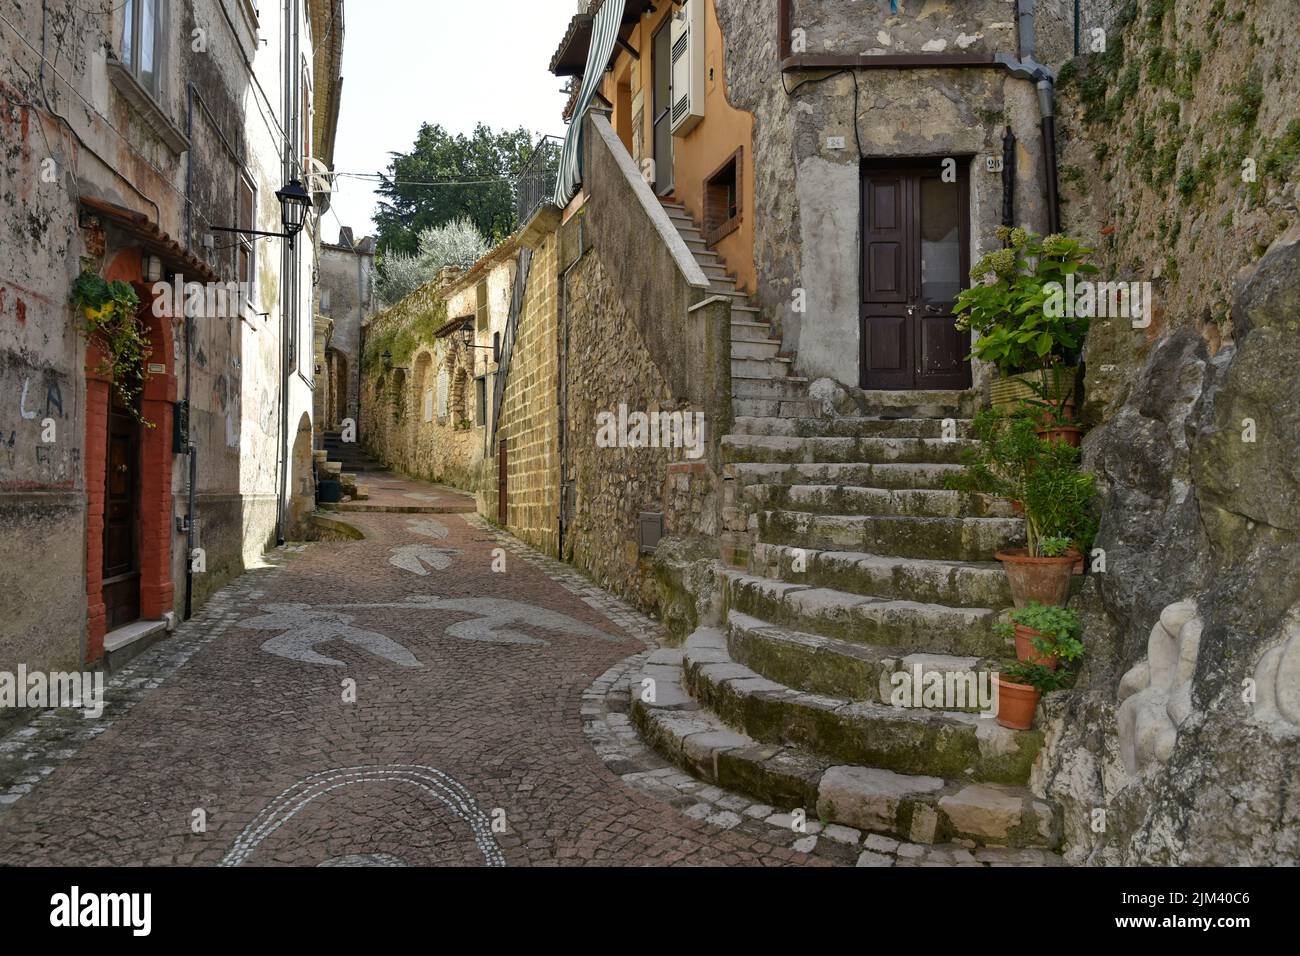 The streets of Lenola. Province of Latina, Lazio region, central Italy. Stock Photo